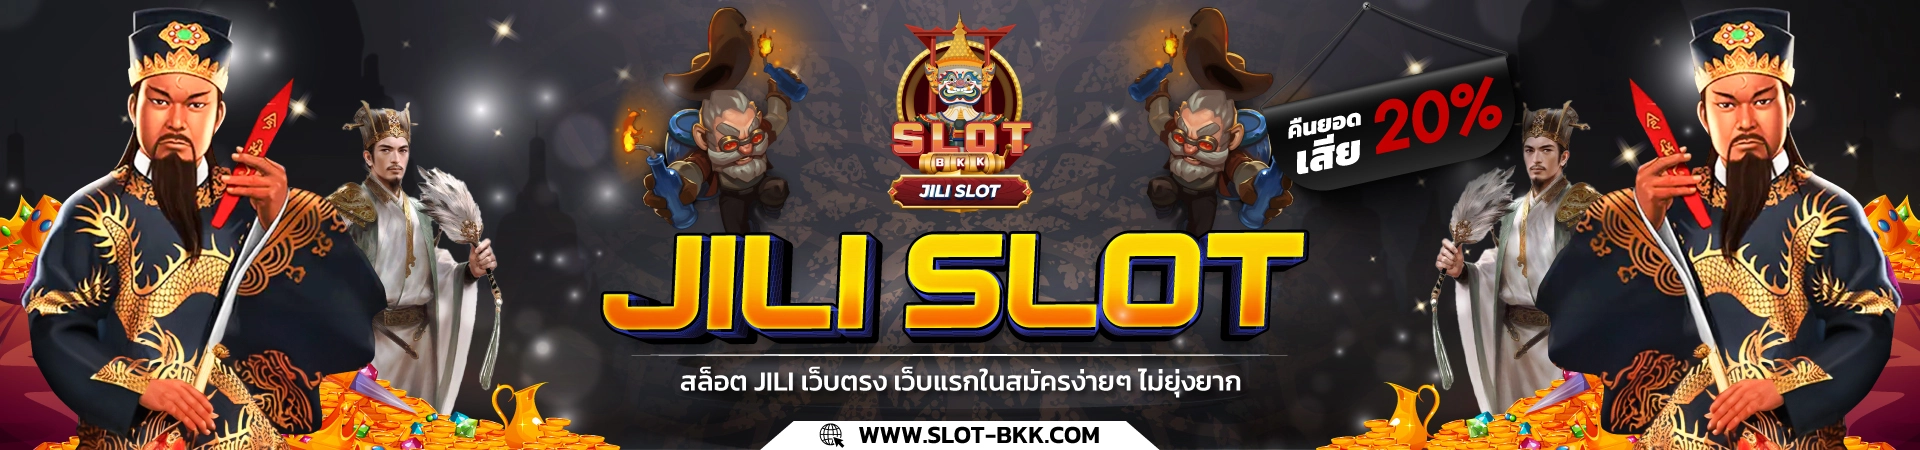 JILI SLOT สล็อต JILI เว็บตรง เจ้าแรกในไทย สมัครง่าย ๆ ไม่ยุ่งยาก